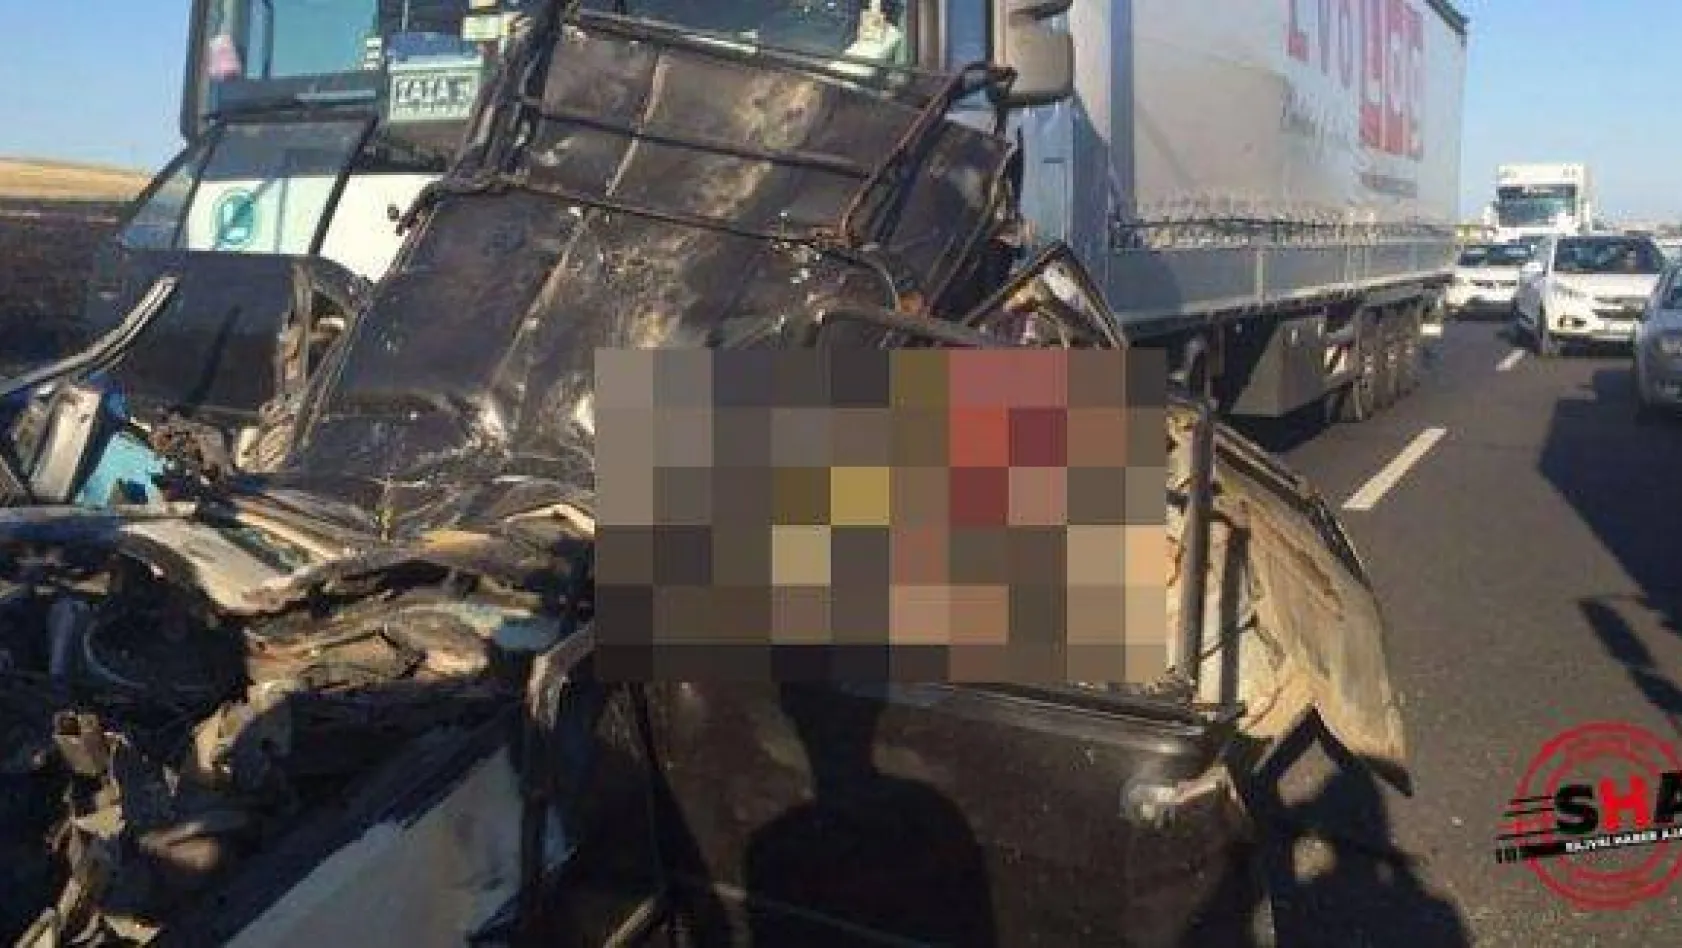 Otomobil, 2 TIRIN arasında kaldı 5 kişi öldü